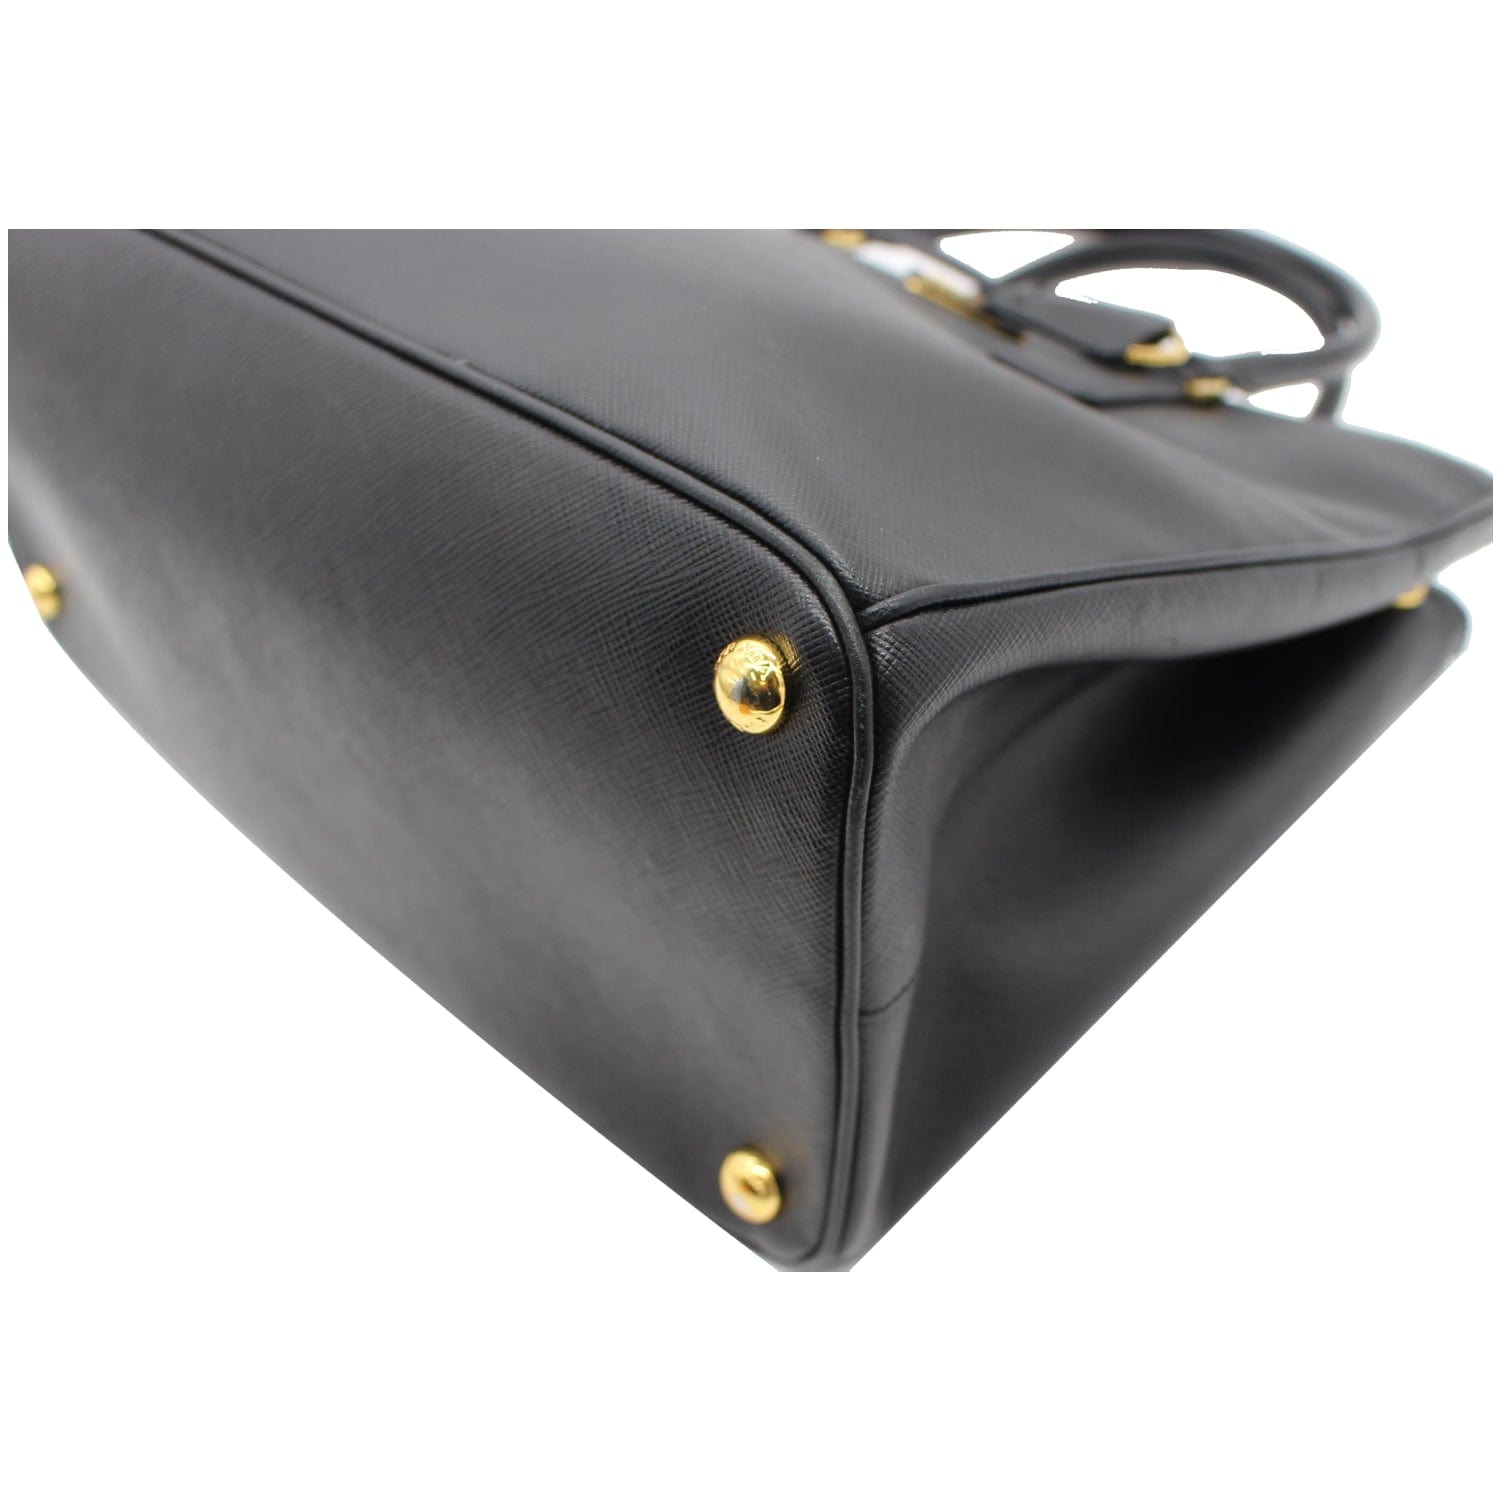 Prada Saffiano Lux Double-Zip Tote Bag, Black (Nero)